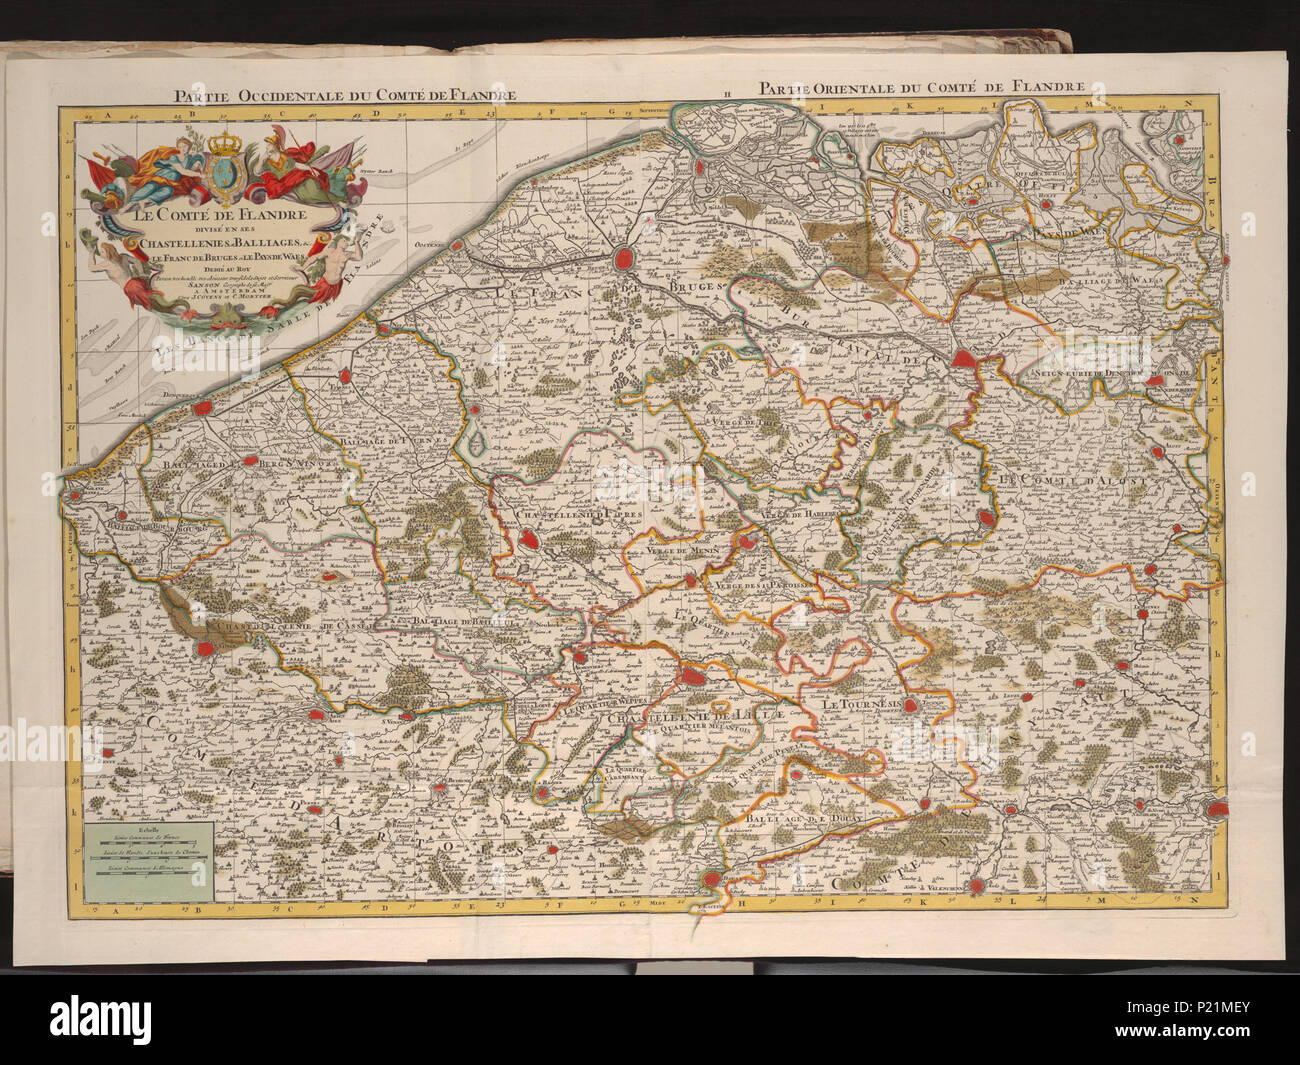 . Le comté de Flandre divisé en ses chastellenies, et balliages, &c. le Franc de Bruges et le Pays de Waes / dedié au Roy par son ... serviteur Sanson geographe de sa Maj.té . Scale [c. 1:200.000]. Map belongs to this alfabetical table. [c. 1750]. Guillaume Sanson (-1703)  XUBAKZL12A8 053, 3/29/12, 9:00 AM,  8C, 7992x10656 (0+0), 100%%%%, JUNI 2011 PPRO, 1/120 s, R55.3, G22.5, B20.0 189 Map - Special Collections University of Amsterdam - OTM- HB-KZL I 2 A 8 (53) Stock Photo